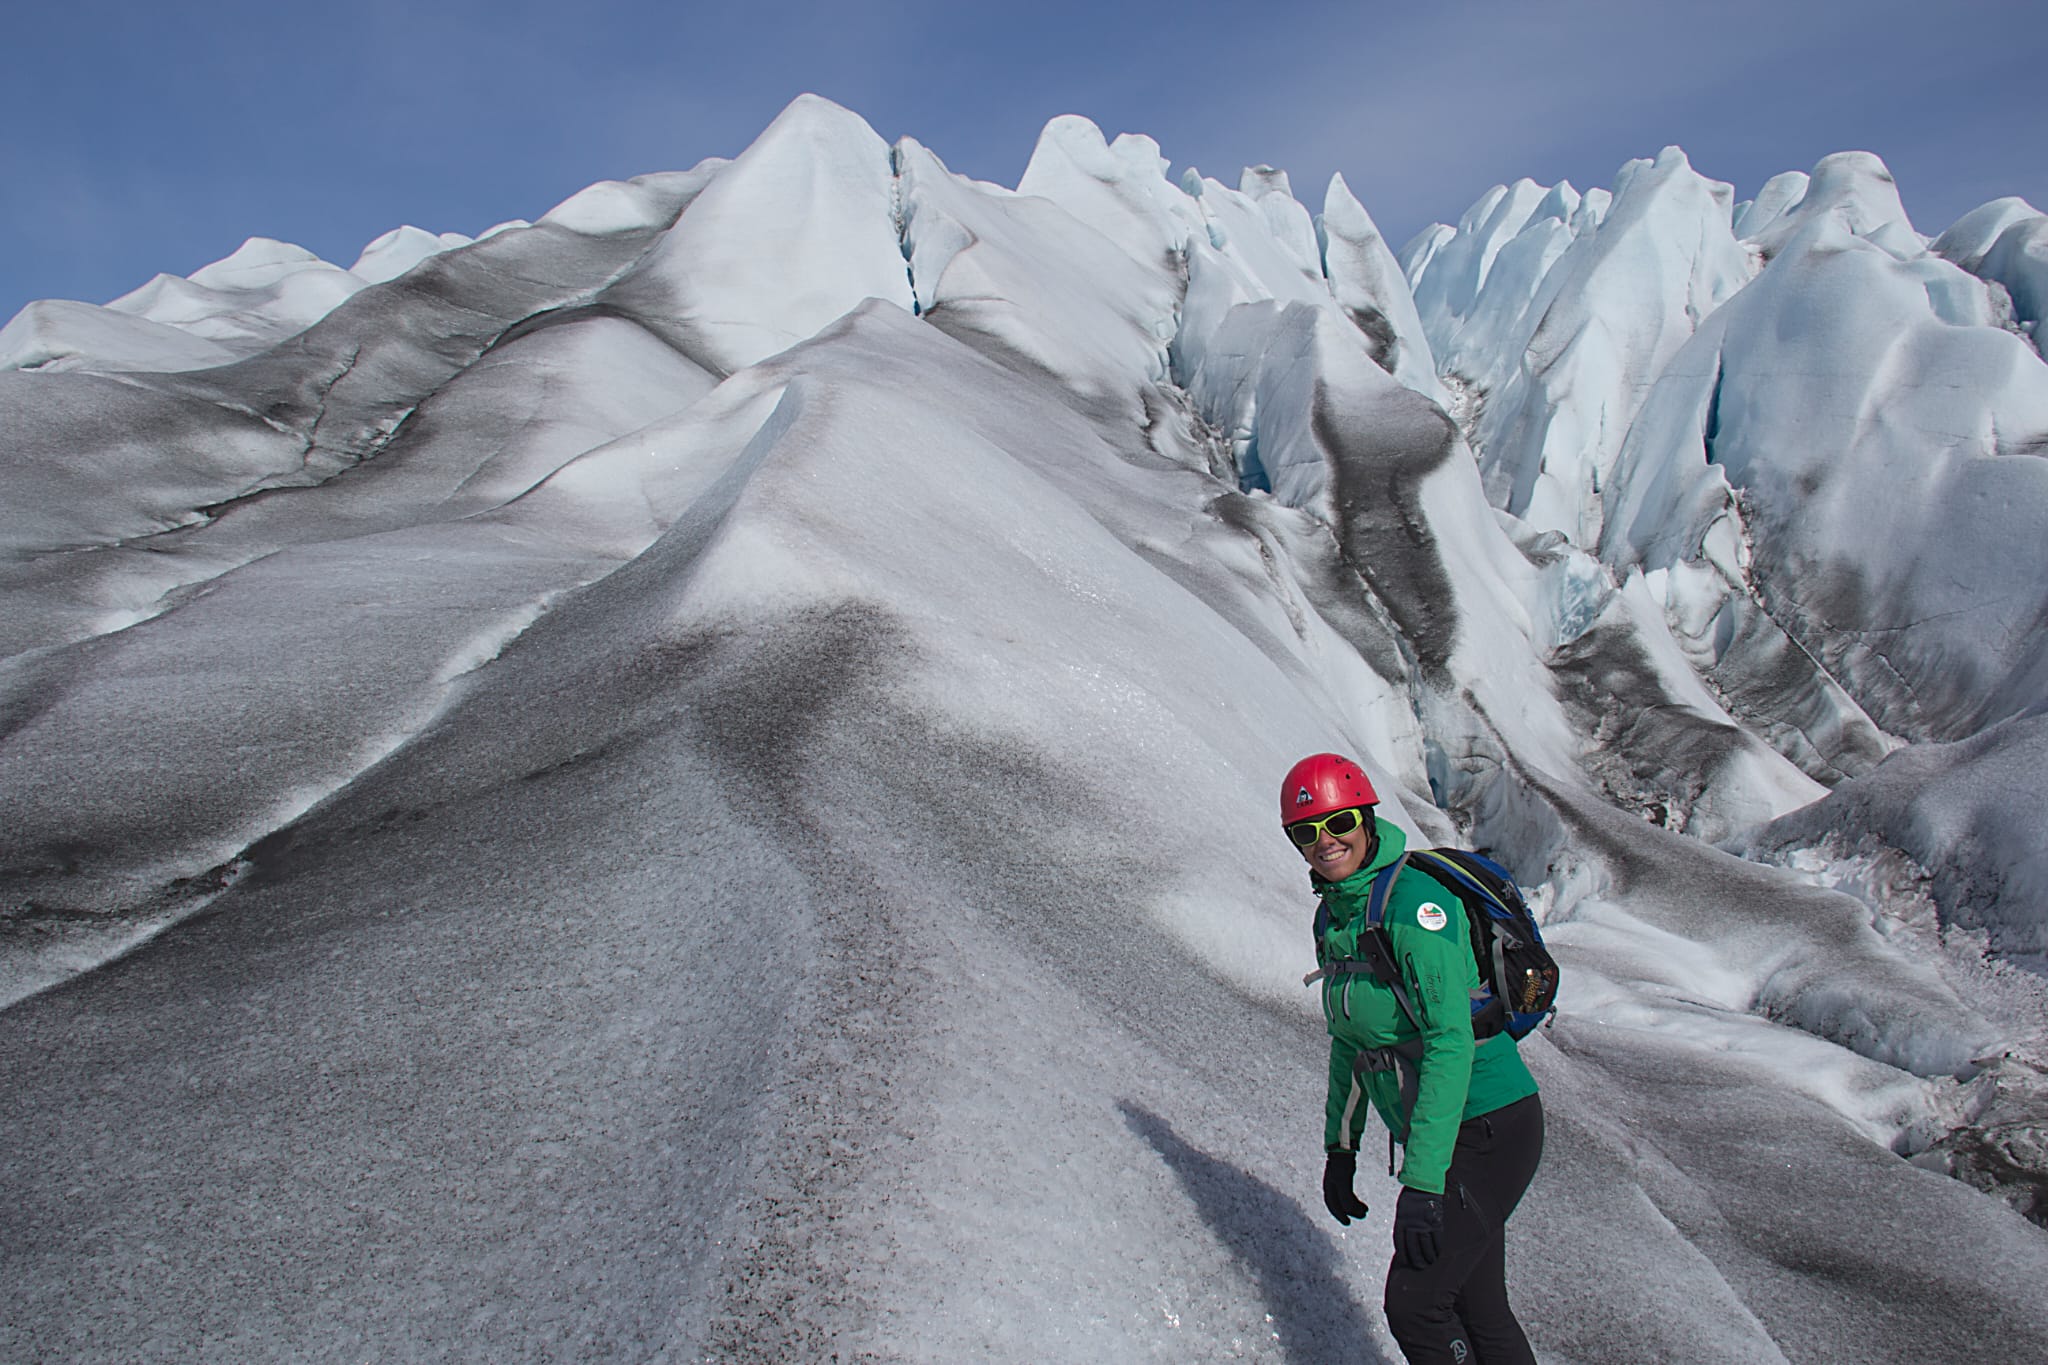 Descripción de la foto de portada: La foto está tomada en Groenlandia. Abajo a la derecha se ve a Susana de cintura para arriba en una ladera nevada en primer plano y con un paisaje de montañas de hielo y nieve al fondo.